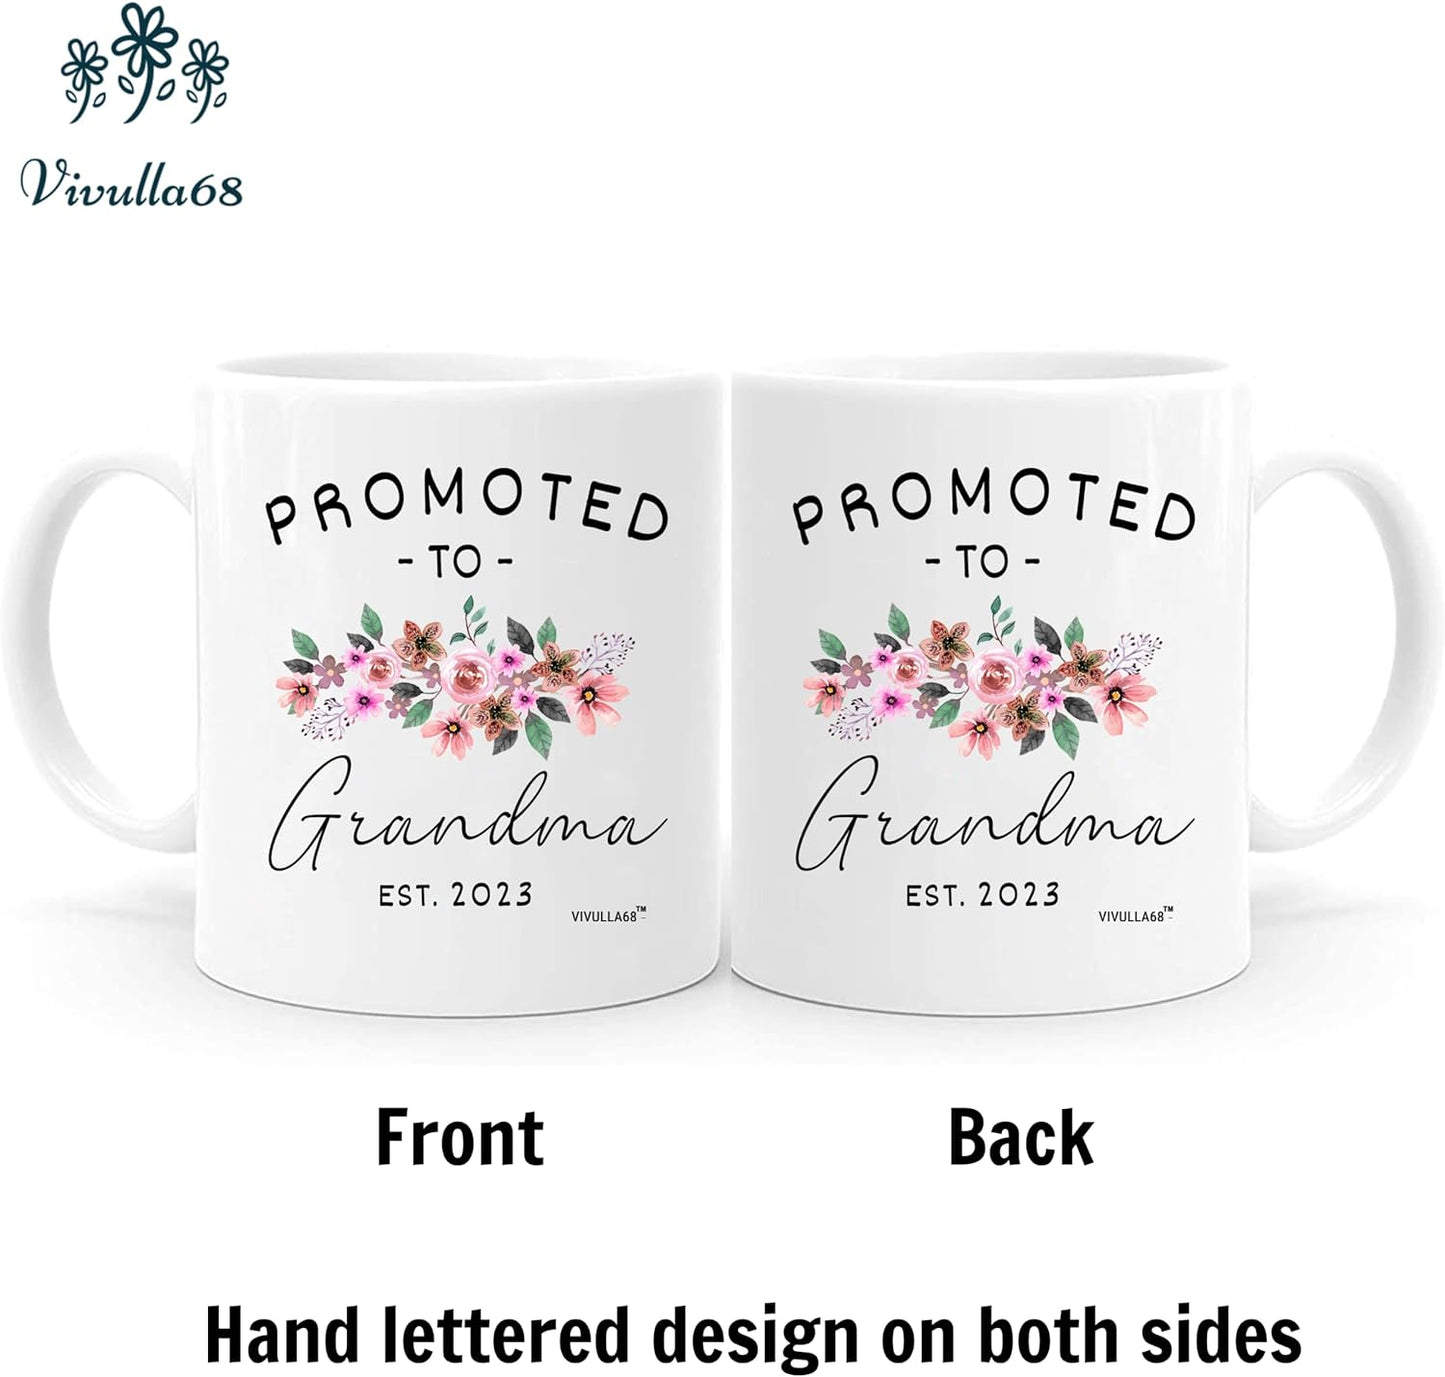 Vivulla68 Promoted To Grandparents Grandma And Grandpa 2023 Mugs, Pregnancy Announcement For Grandparents Mug Set, Grandma And Grandpa Announcement Gifts, Grandparents Baby Announcement Christmas Gift